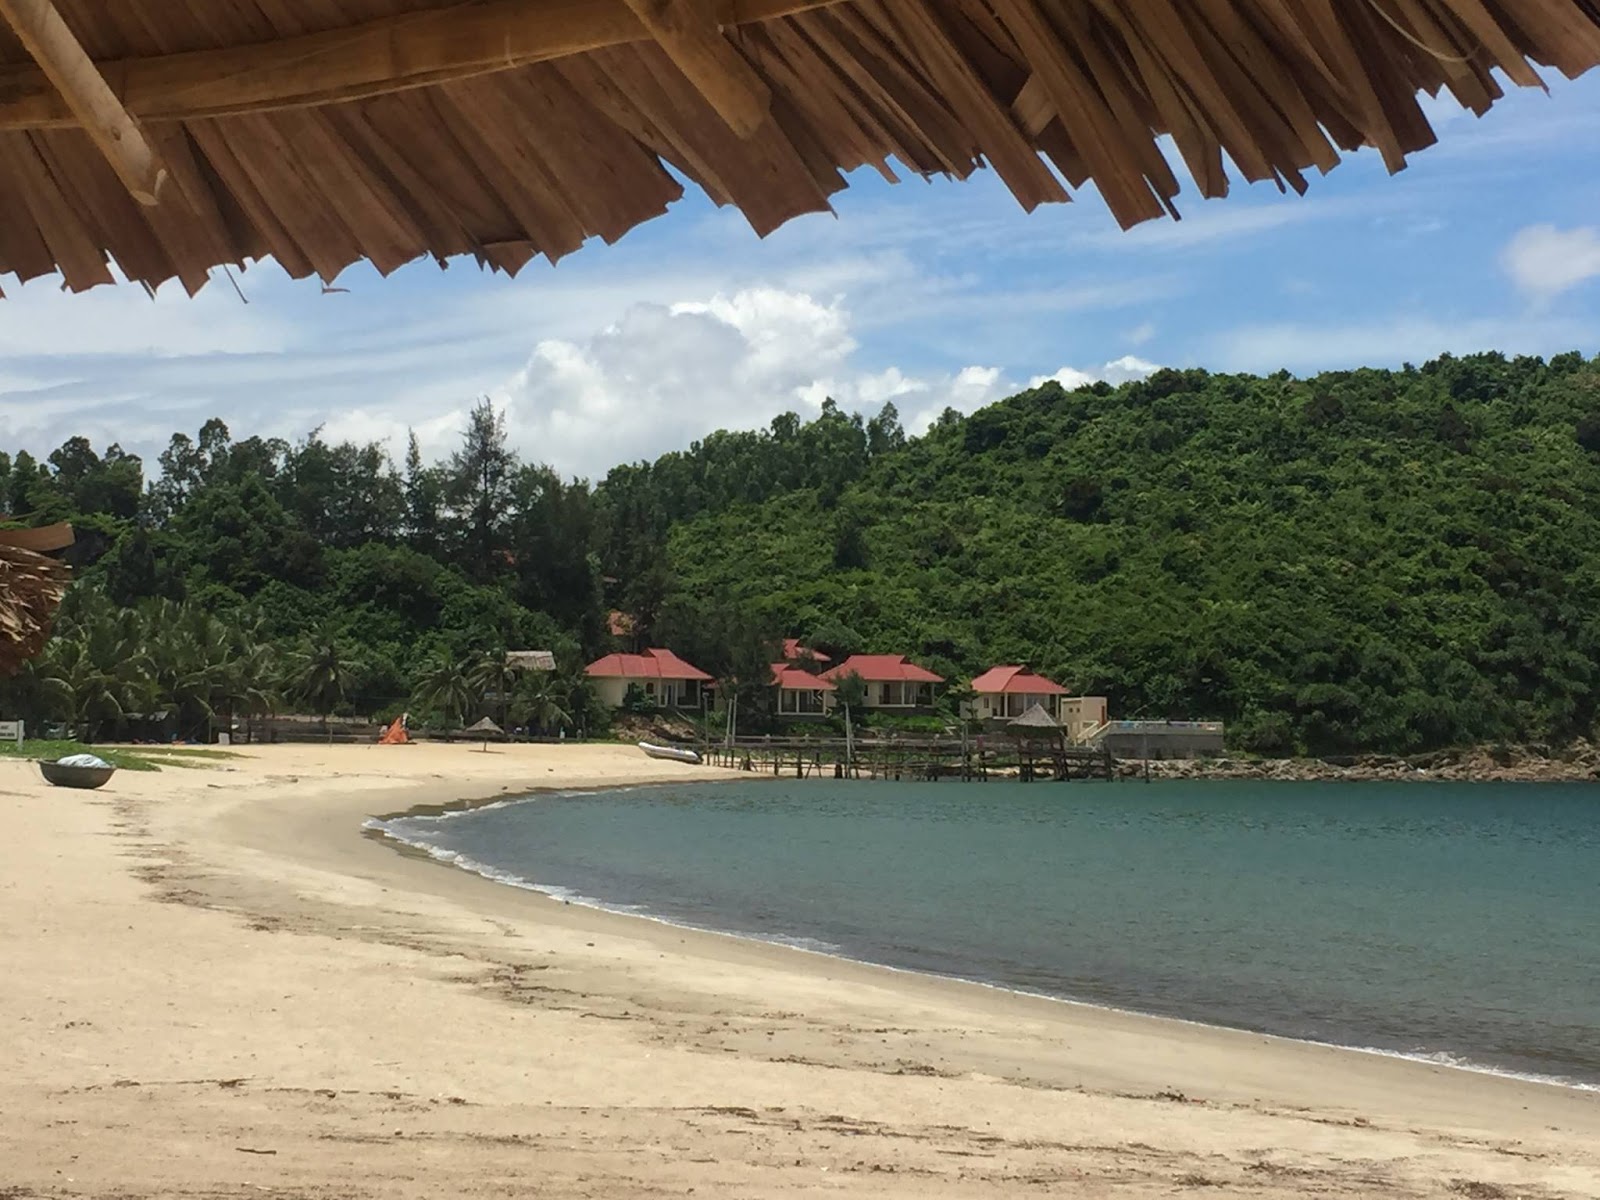 Foto de Tien Sa Beach - lugar popular entre los conocedores del relax